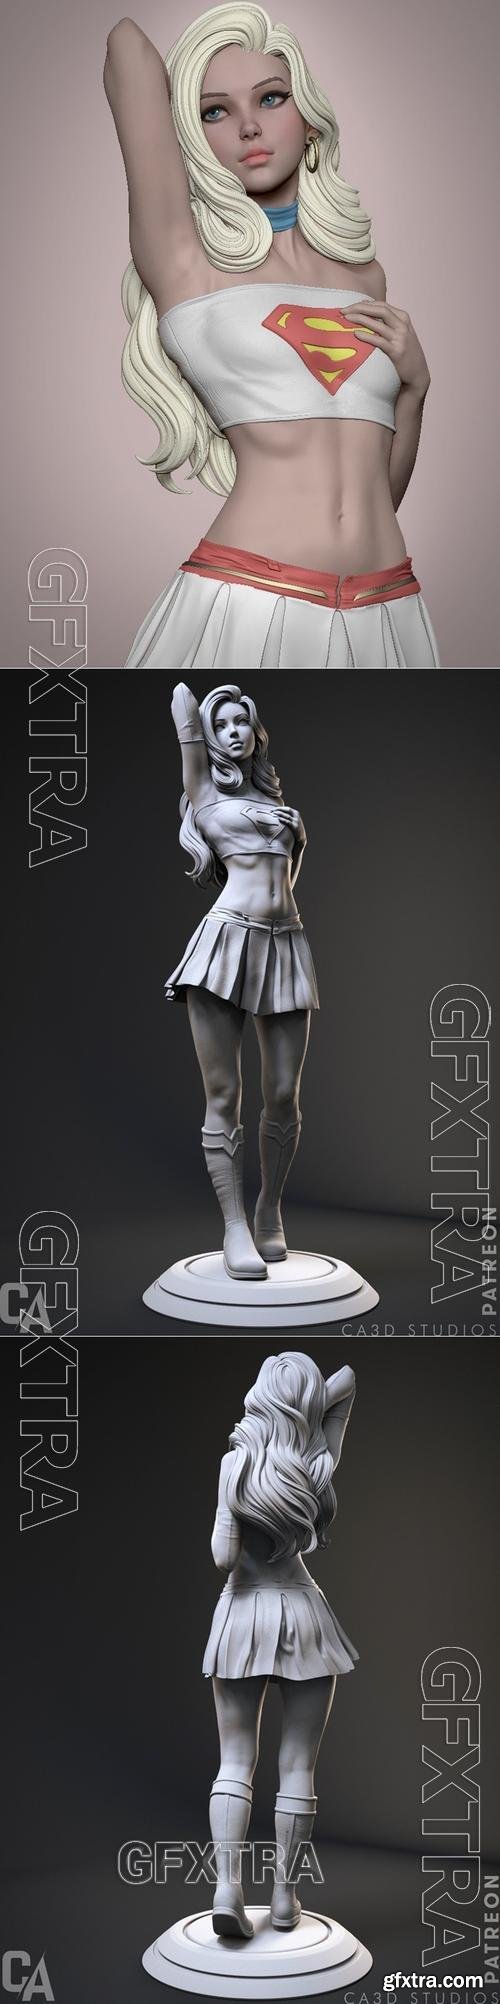 Ca 3d Studios - Supergirl &ndash; 3D Print Model